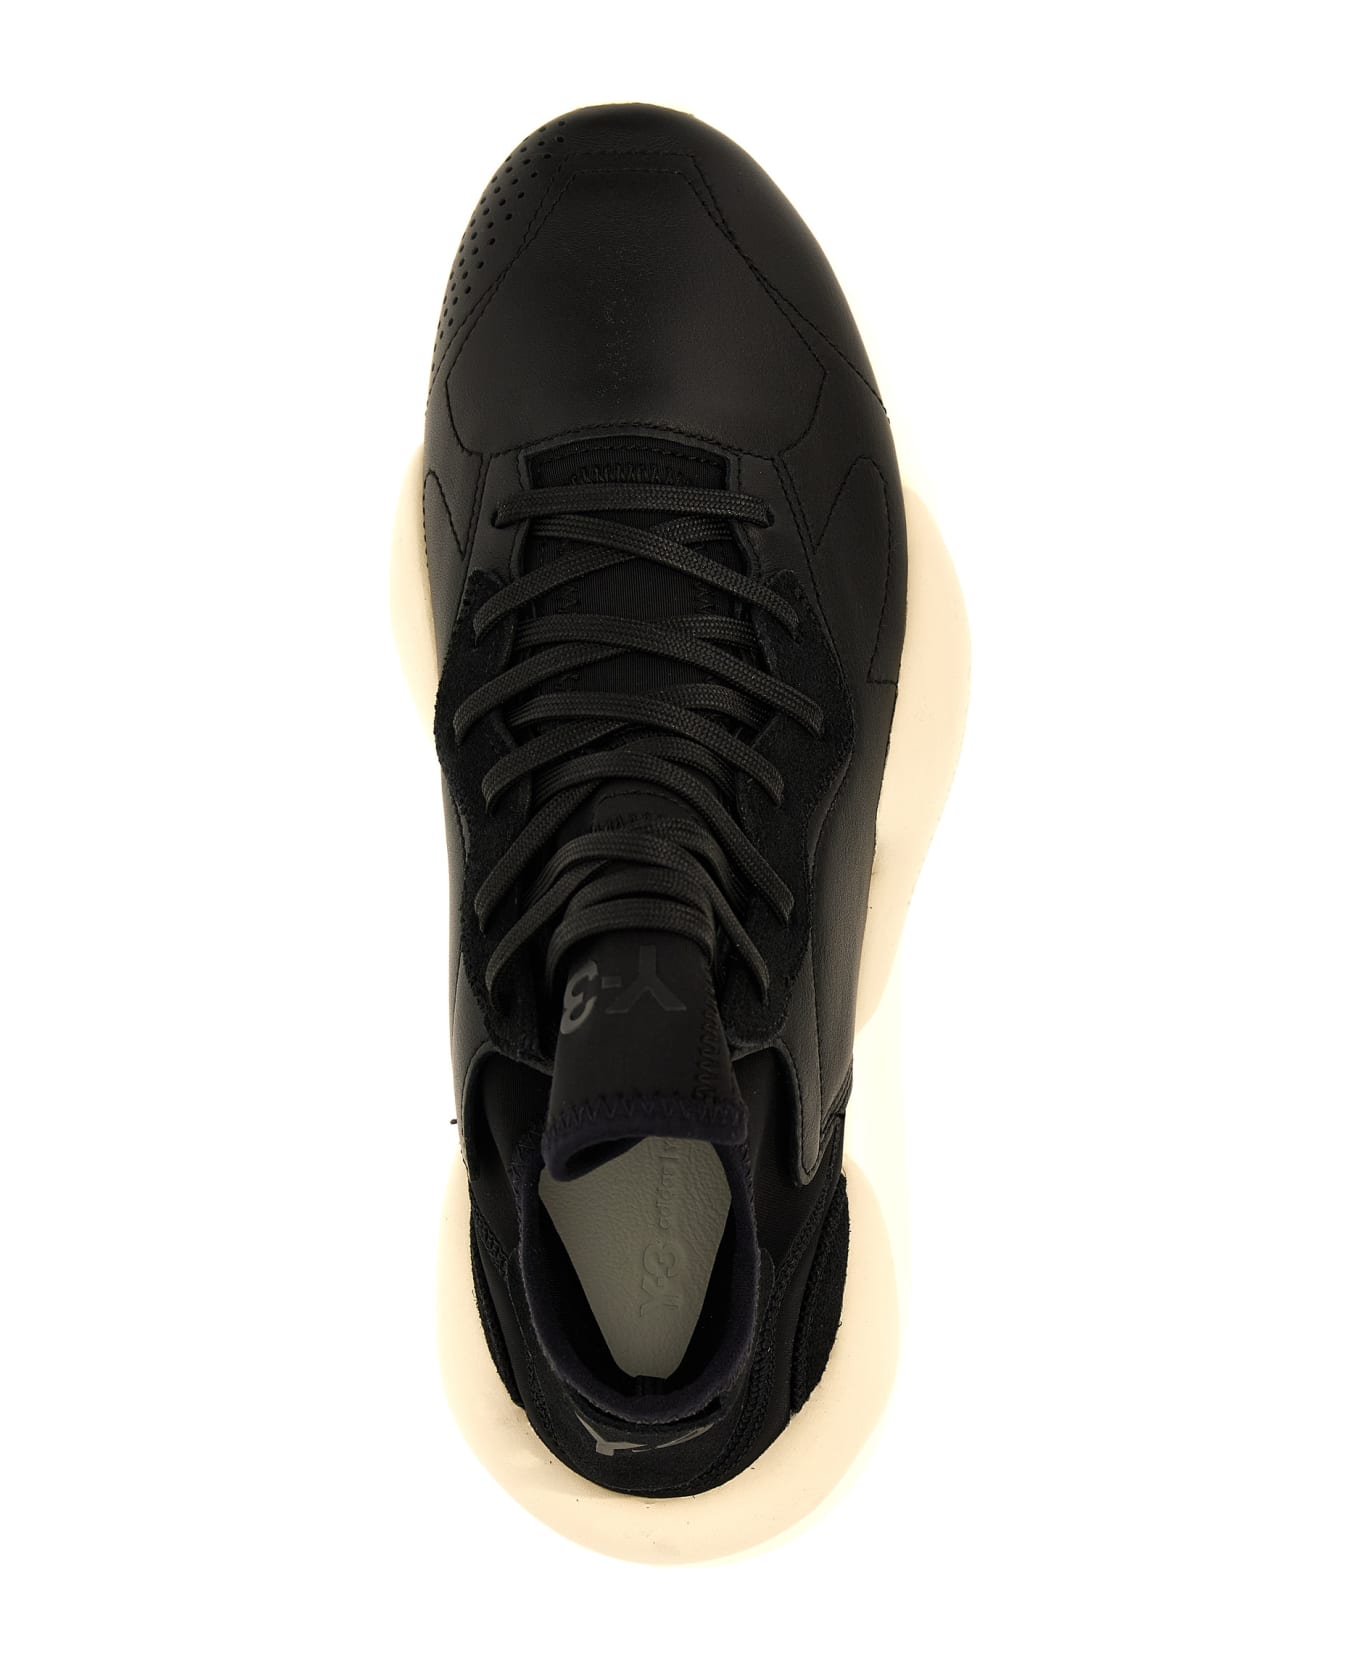 Y-3 'kaiwa' Sneakers - White/Black